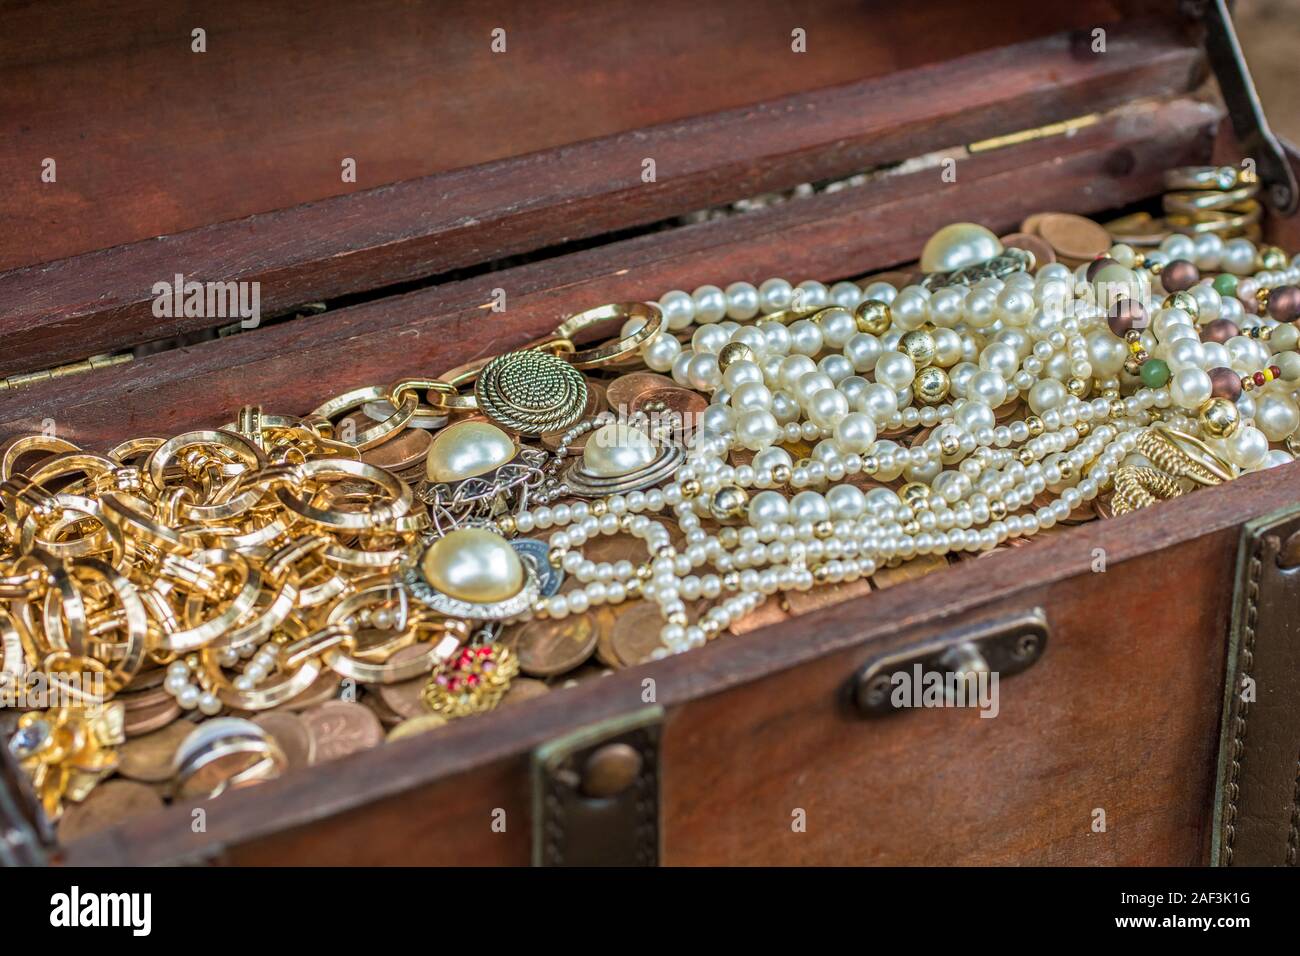 Old treasure chest with precious treasure Stock Photo